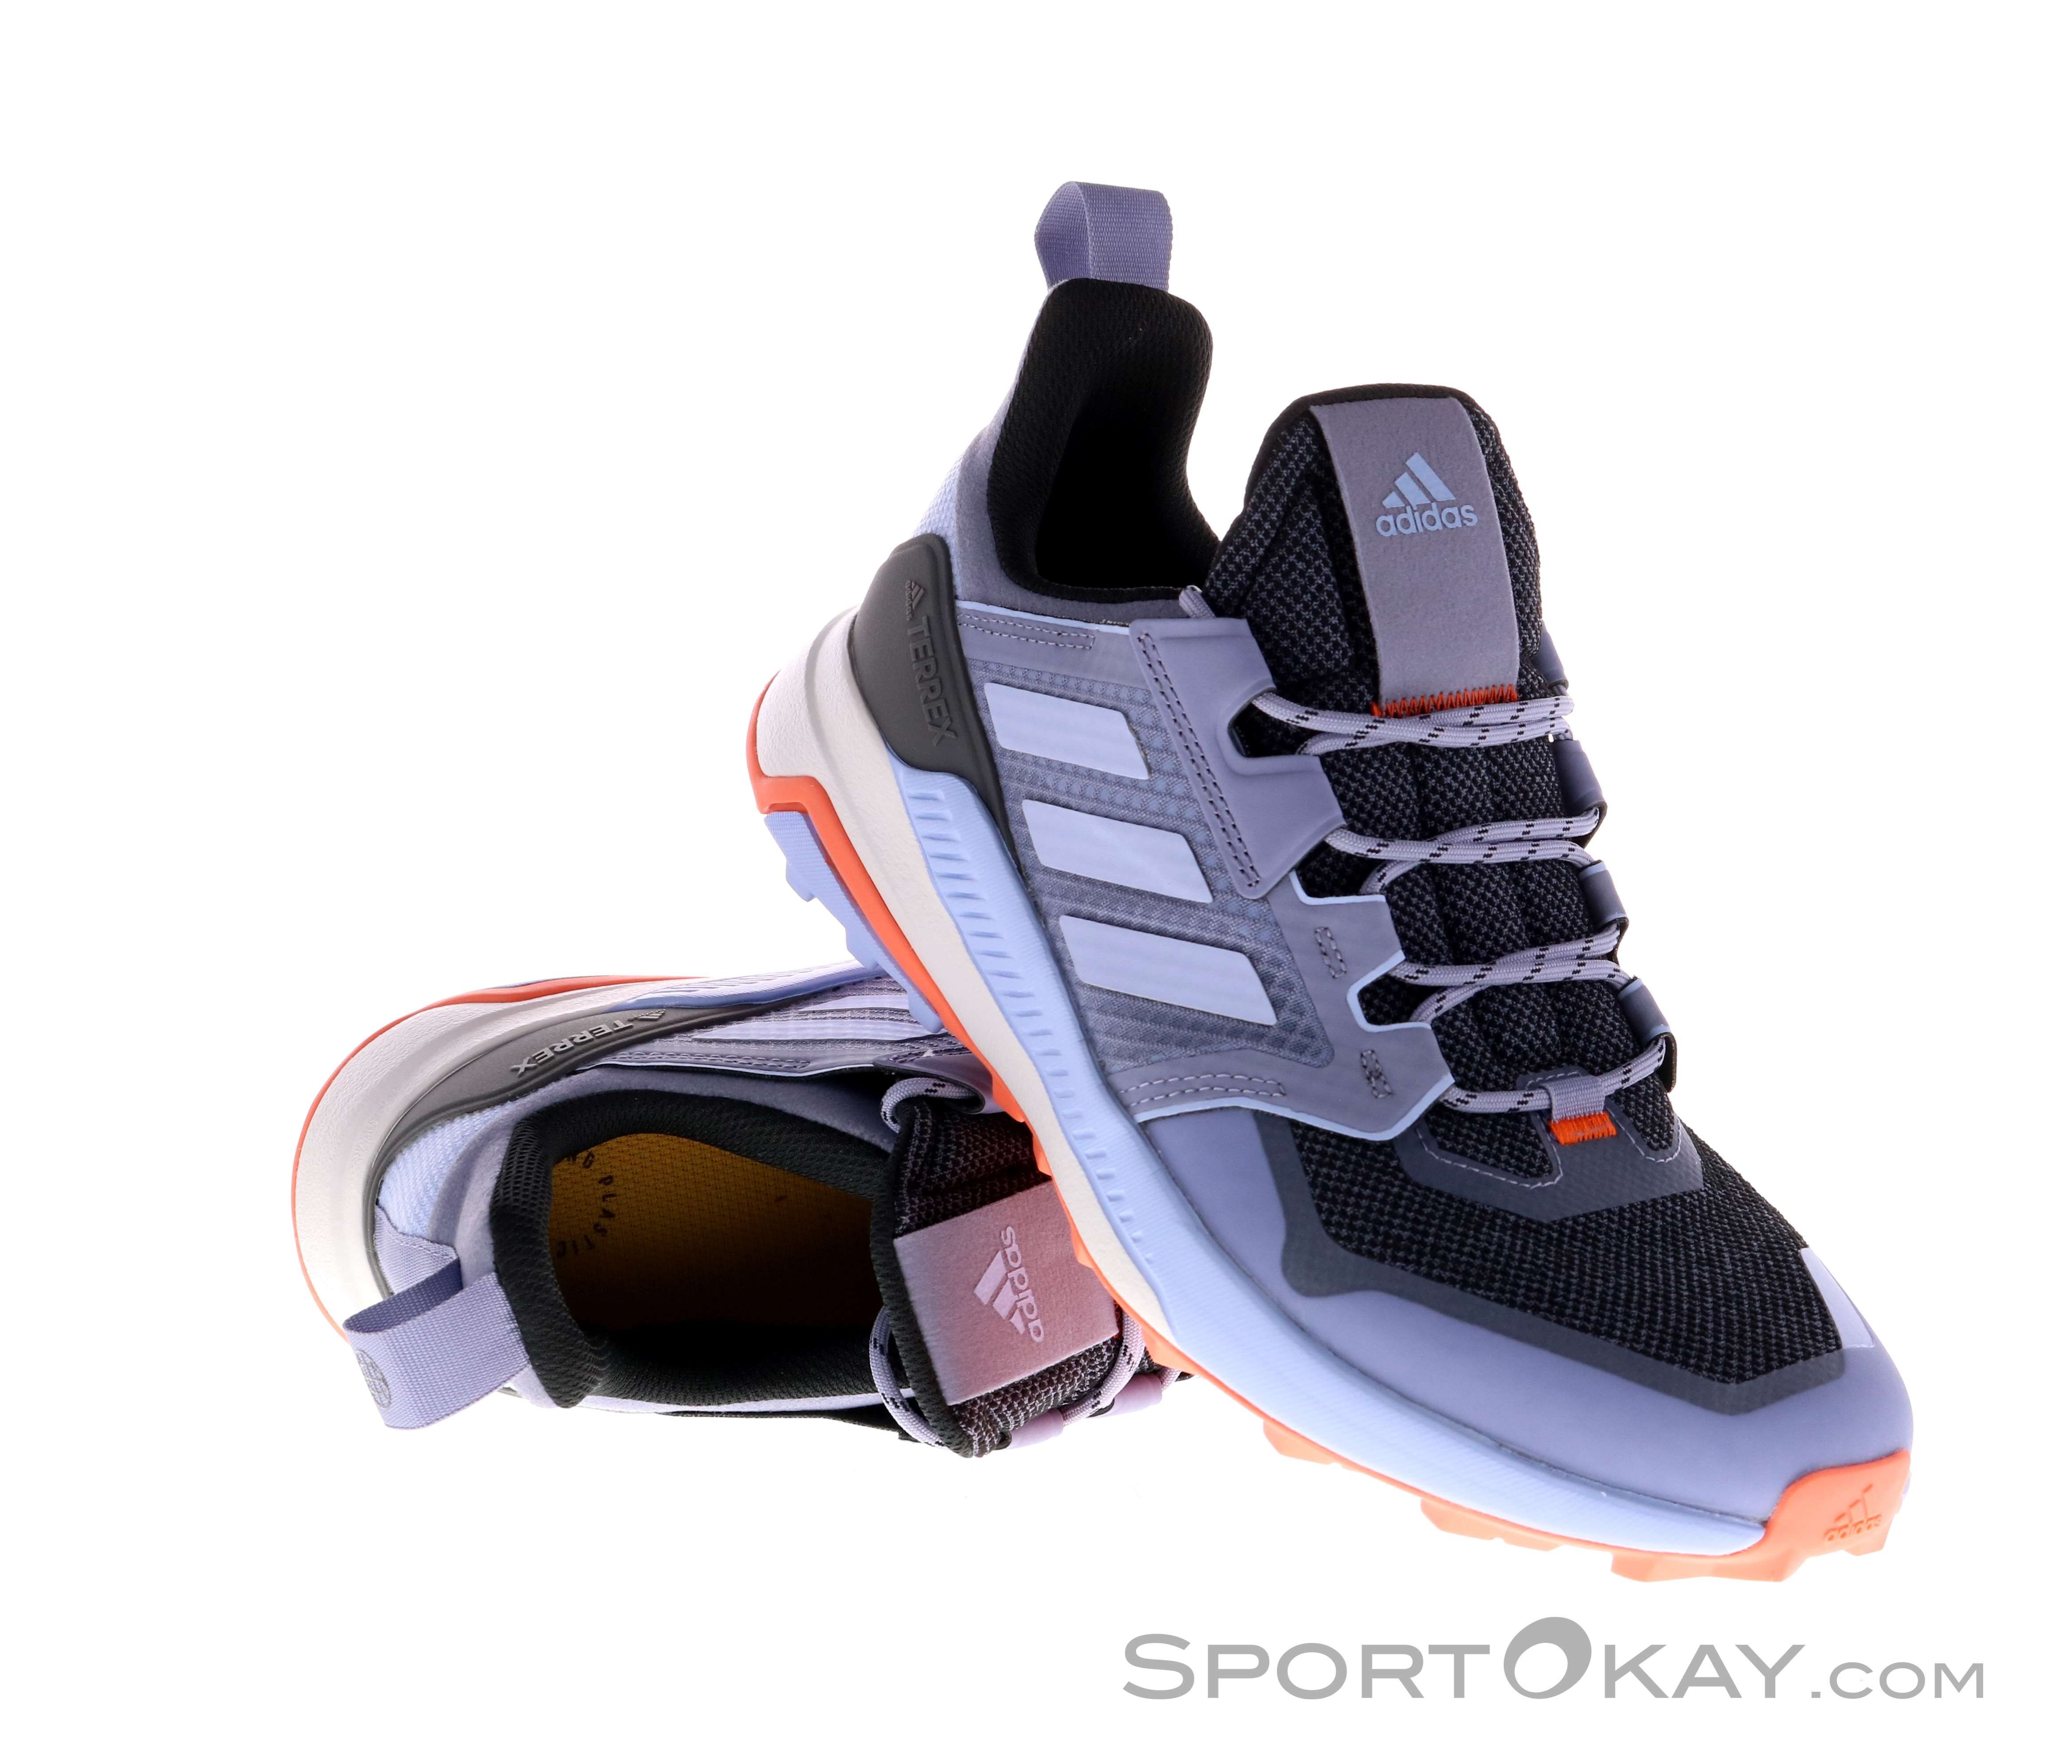 N1 Adidas Terrex Gore-Tex Gris - Zapatillas l  Tallas 31  Color Gris